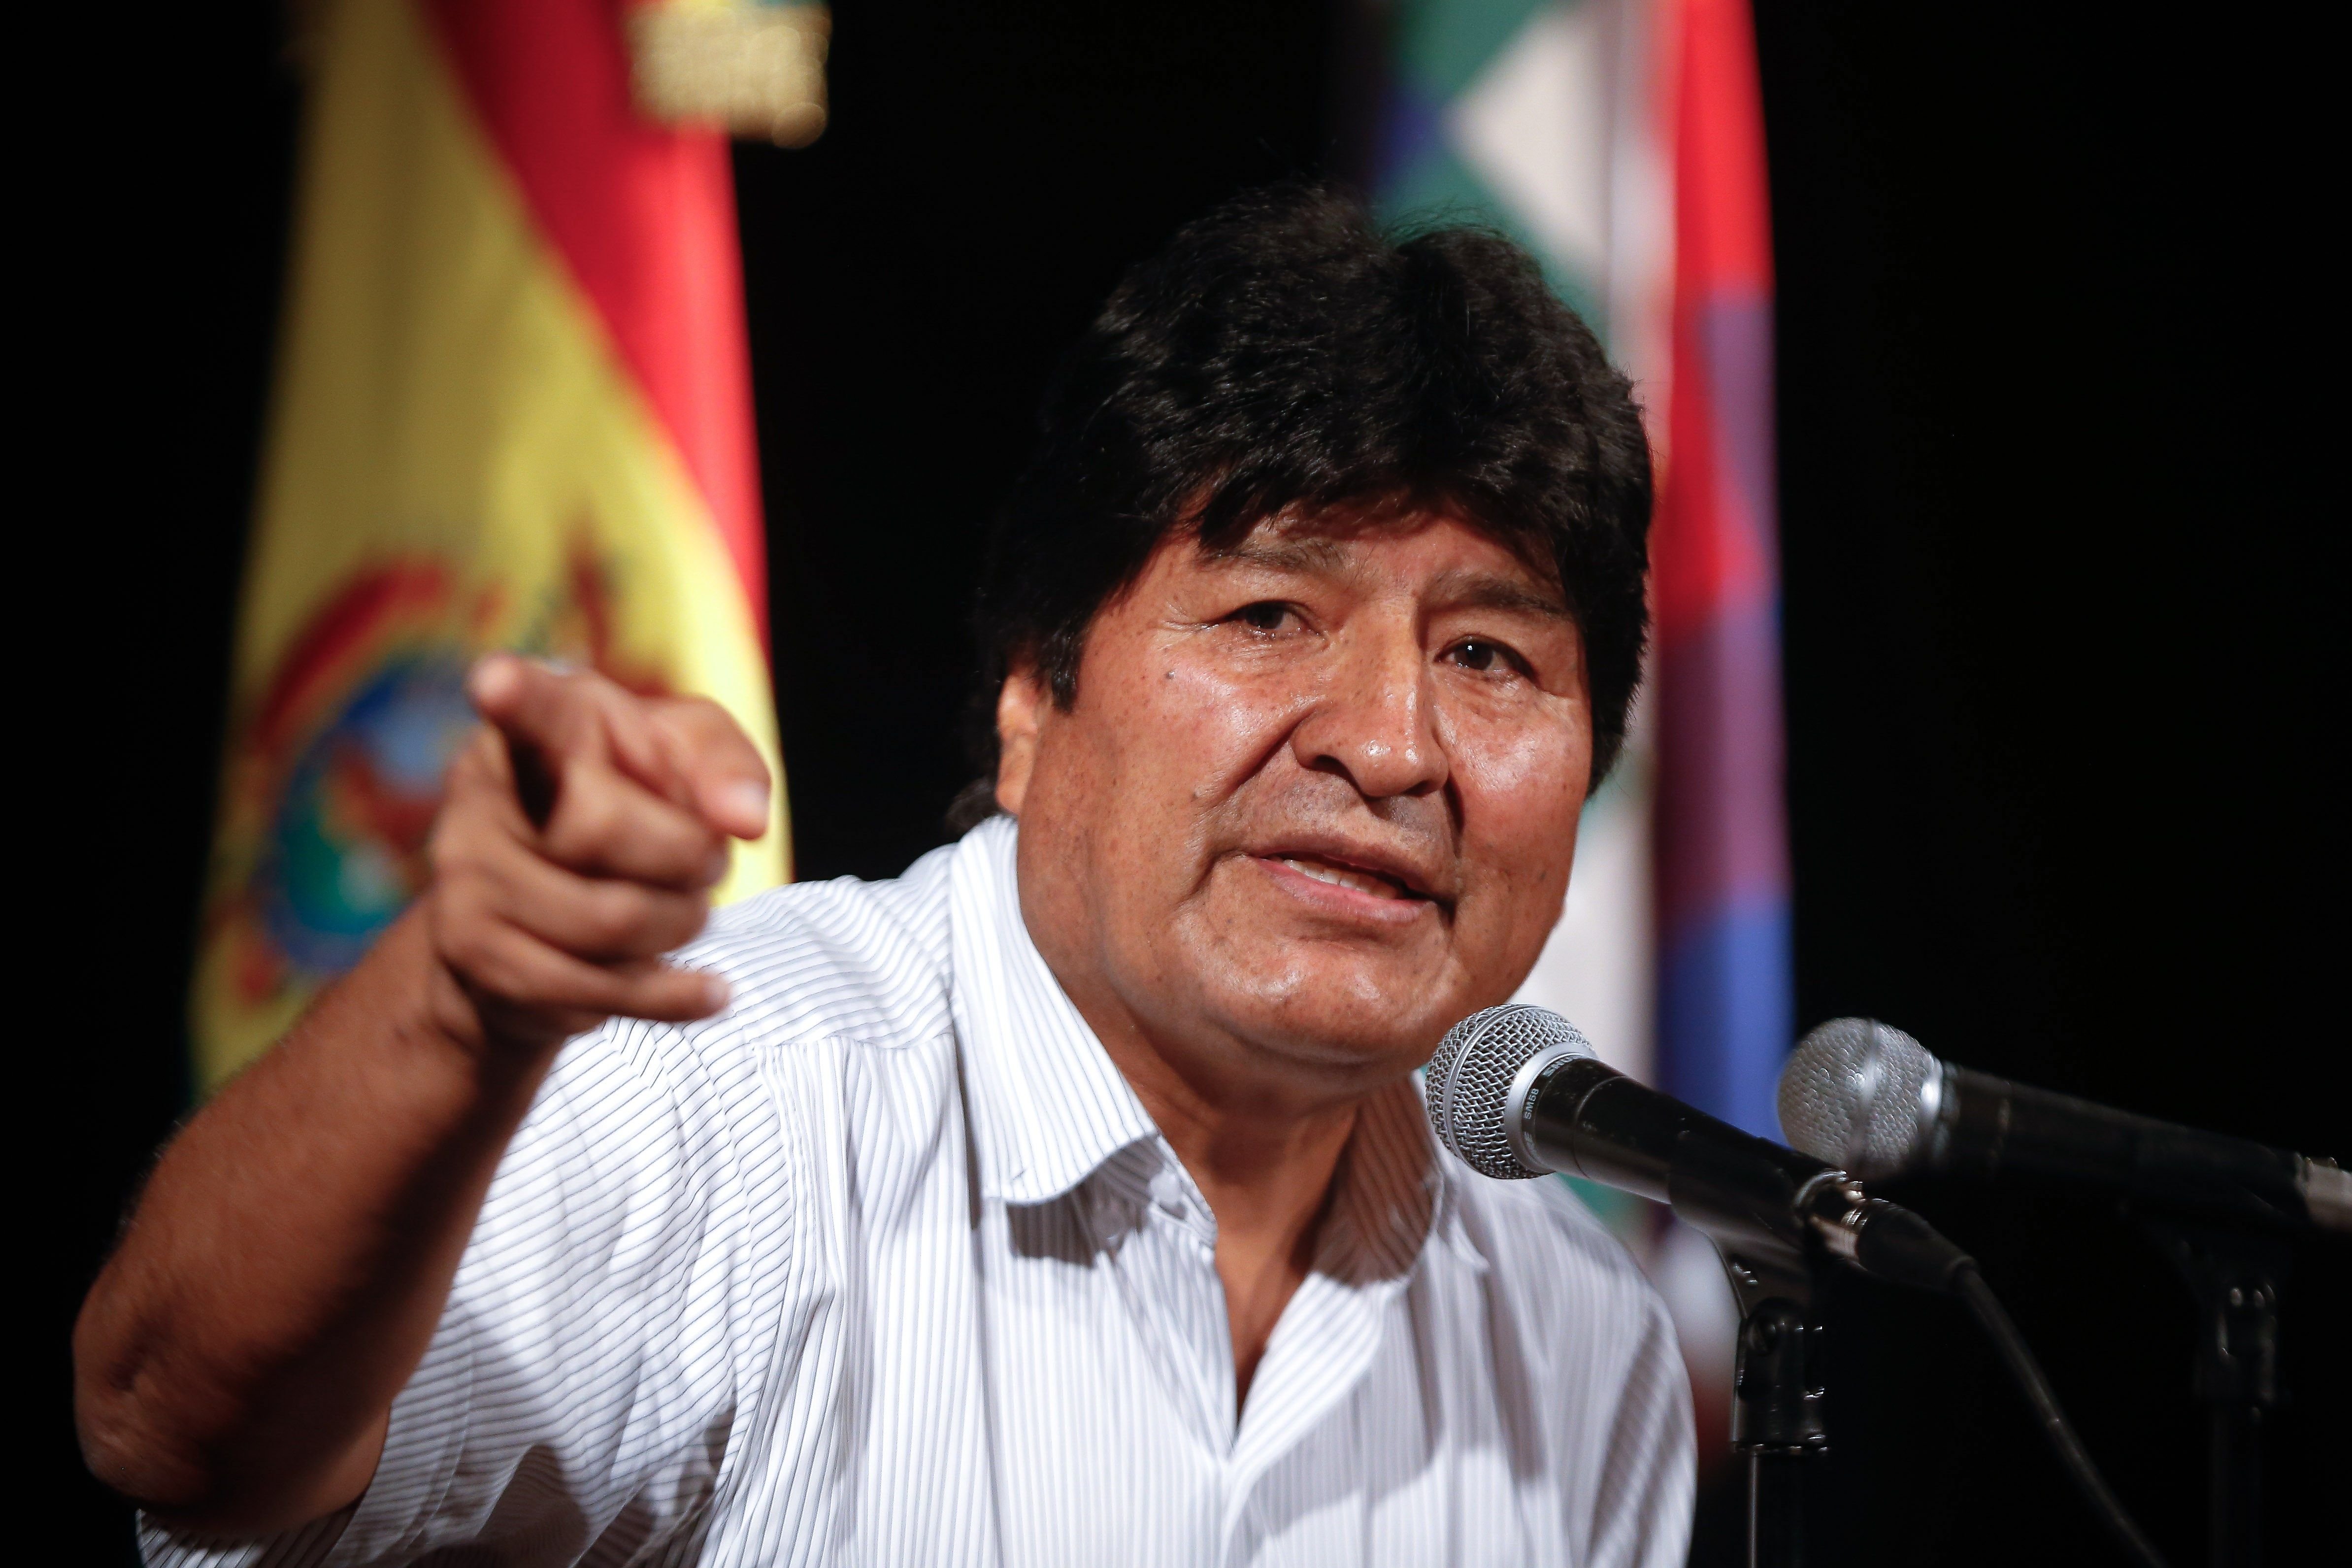 Evo Morales ficha a Baltasar Garzón para su equipo de defensa